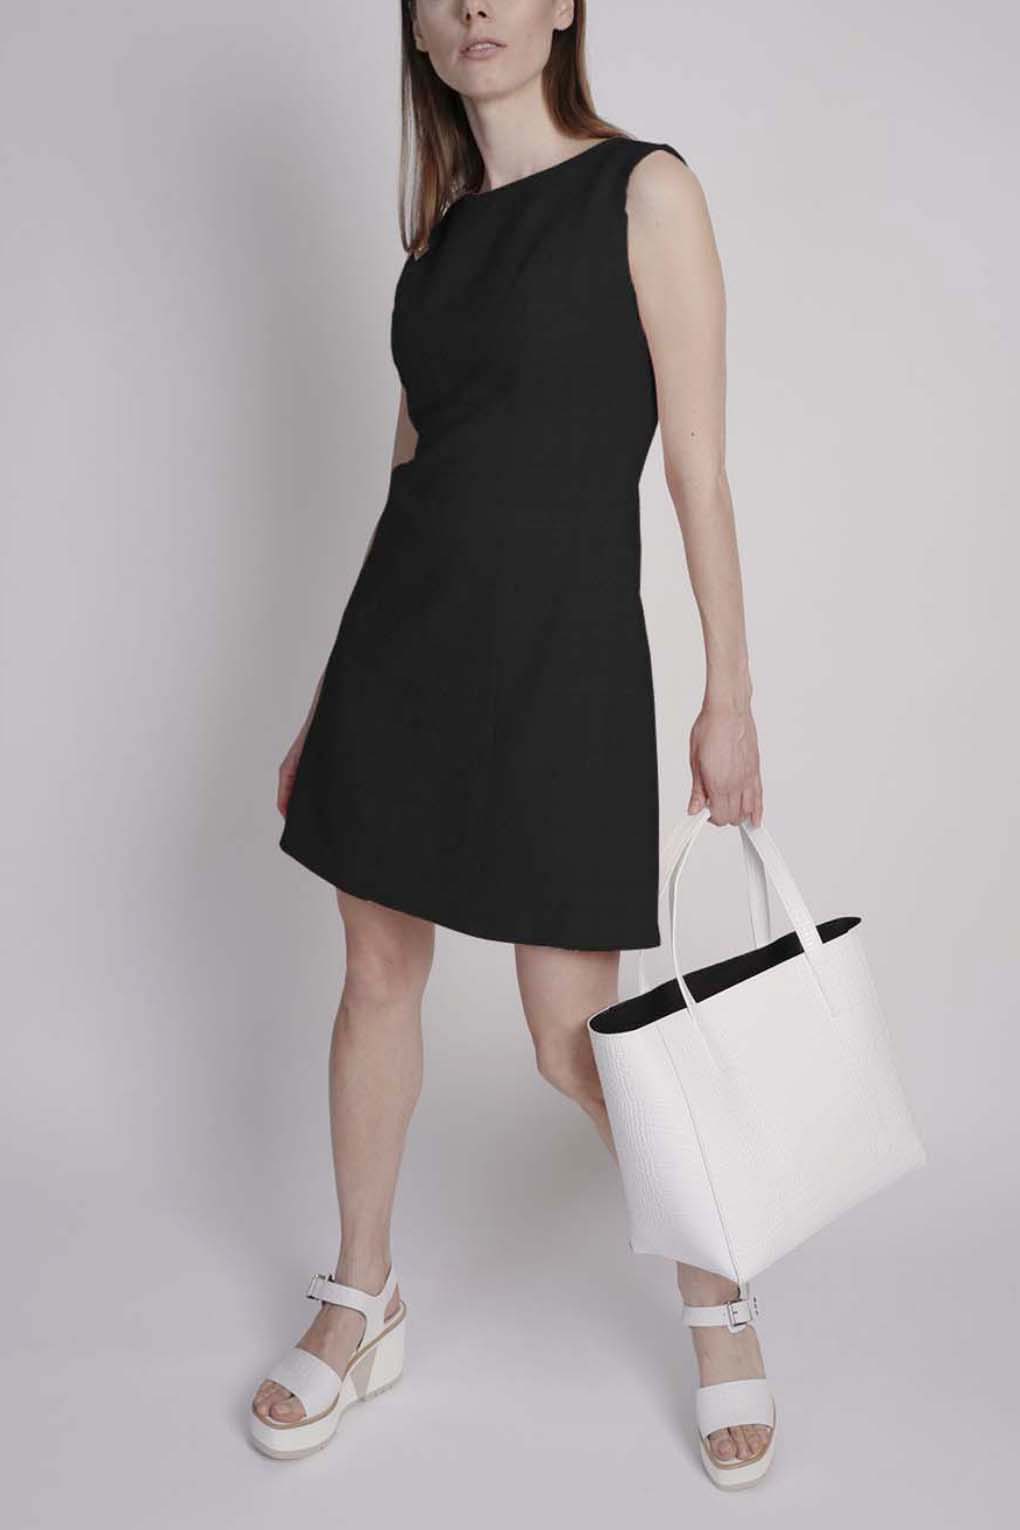 фото Платье женское paola ray pr120-3085 черное xl